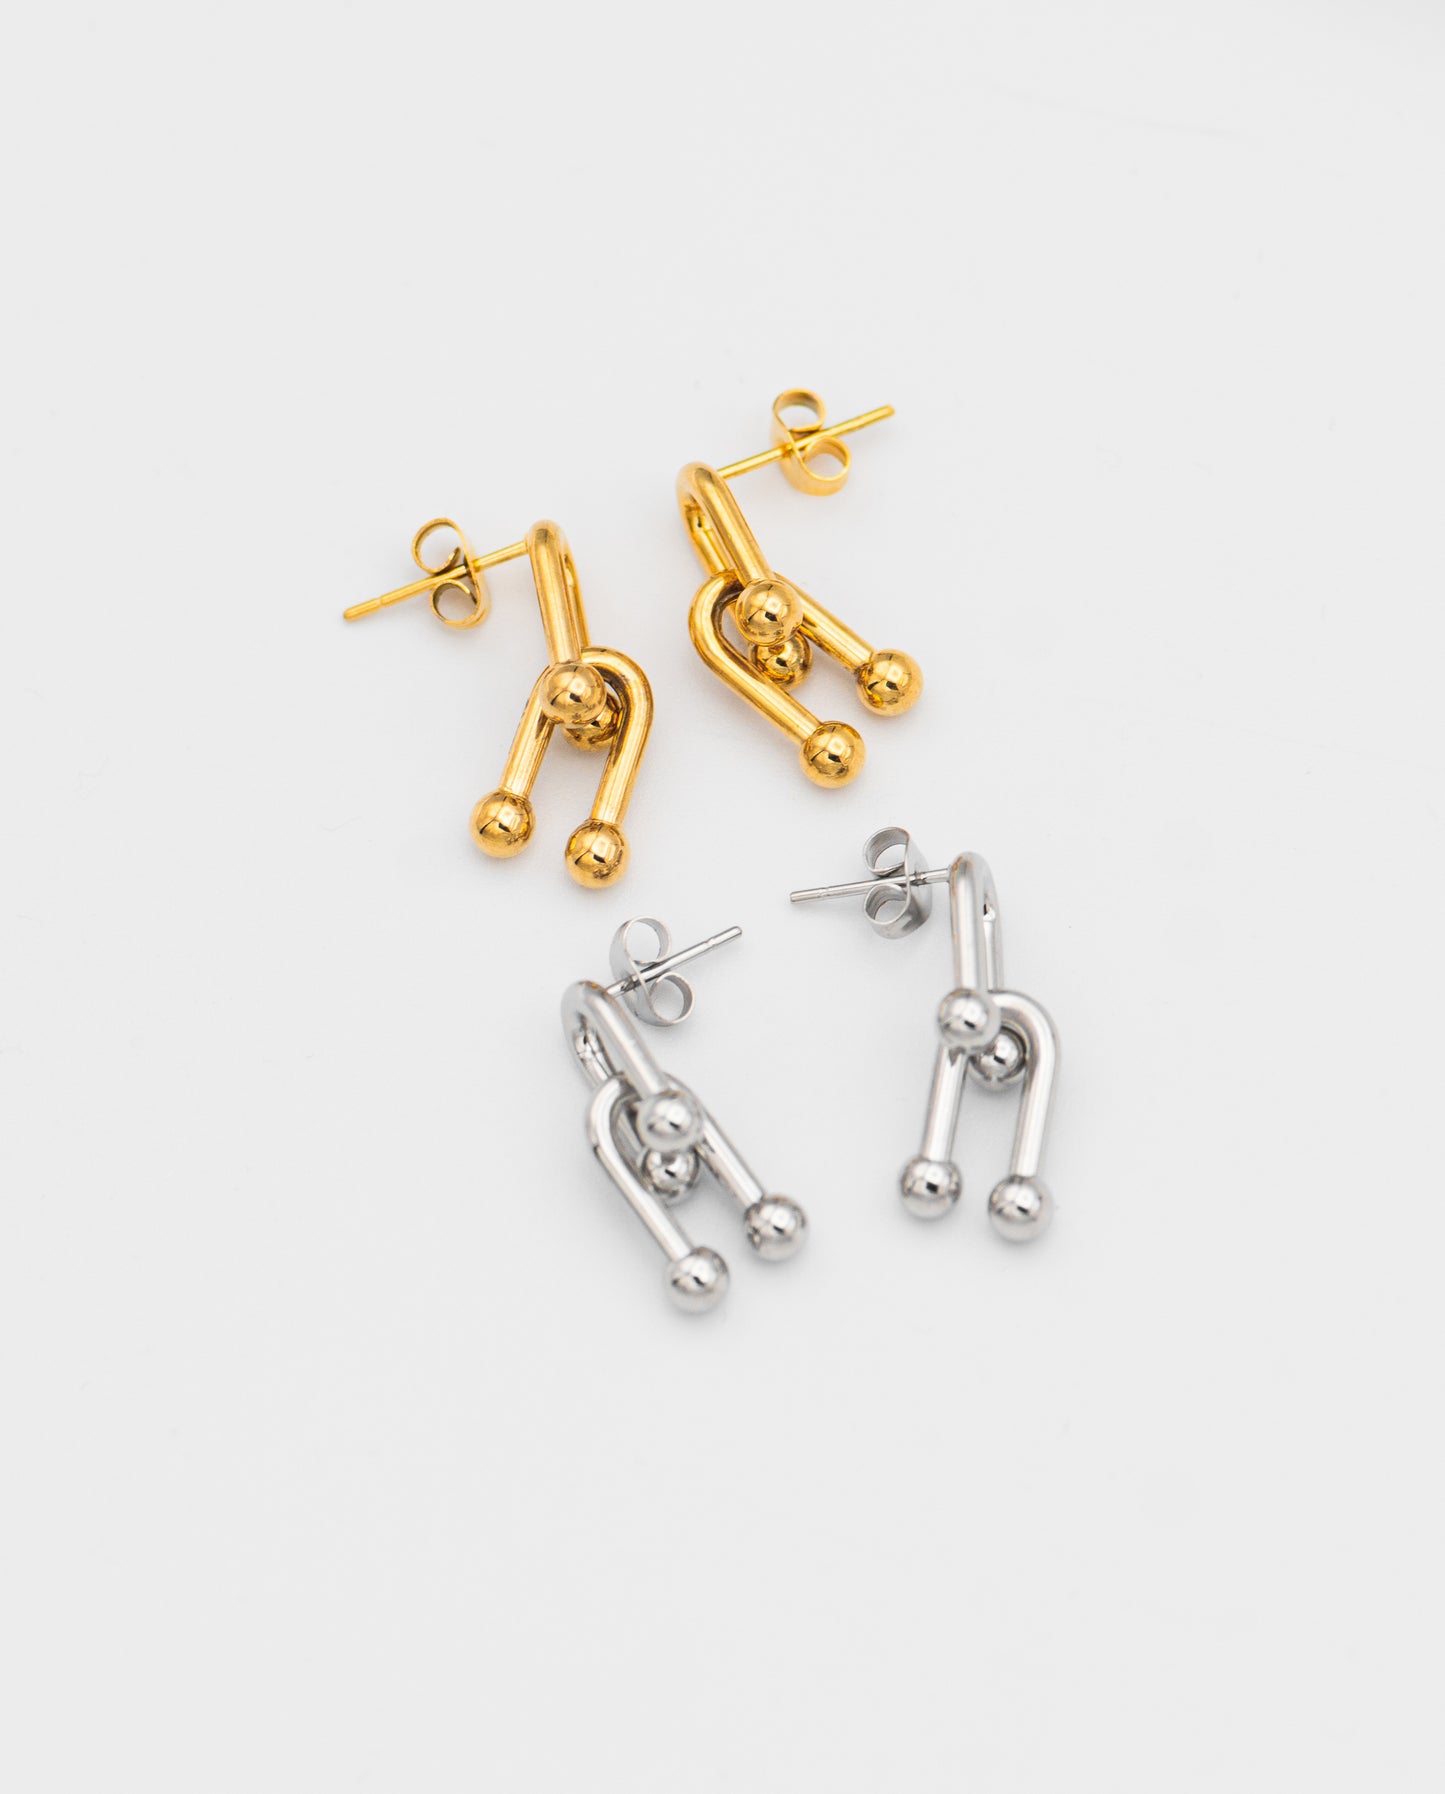 Blair Chain Link Earrings